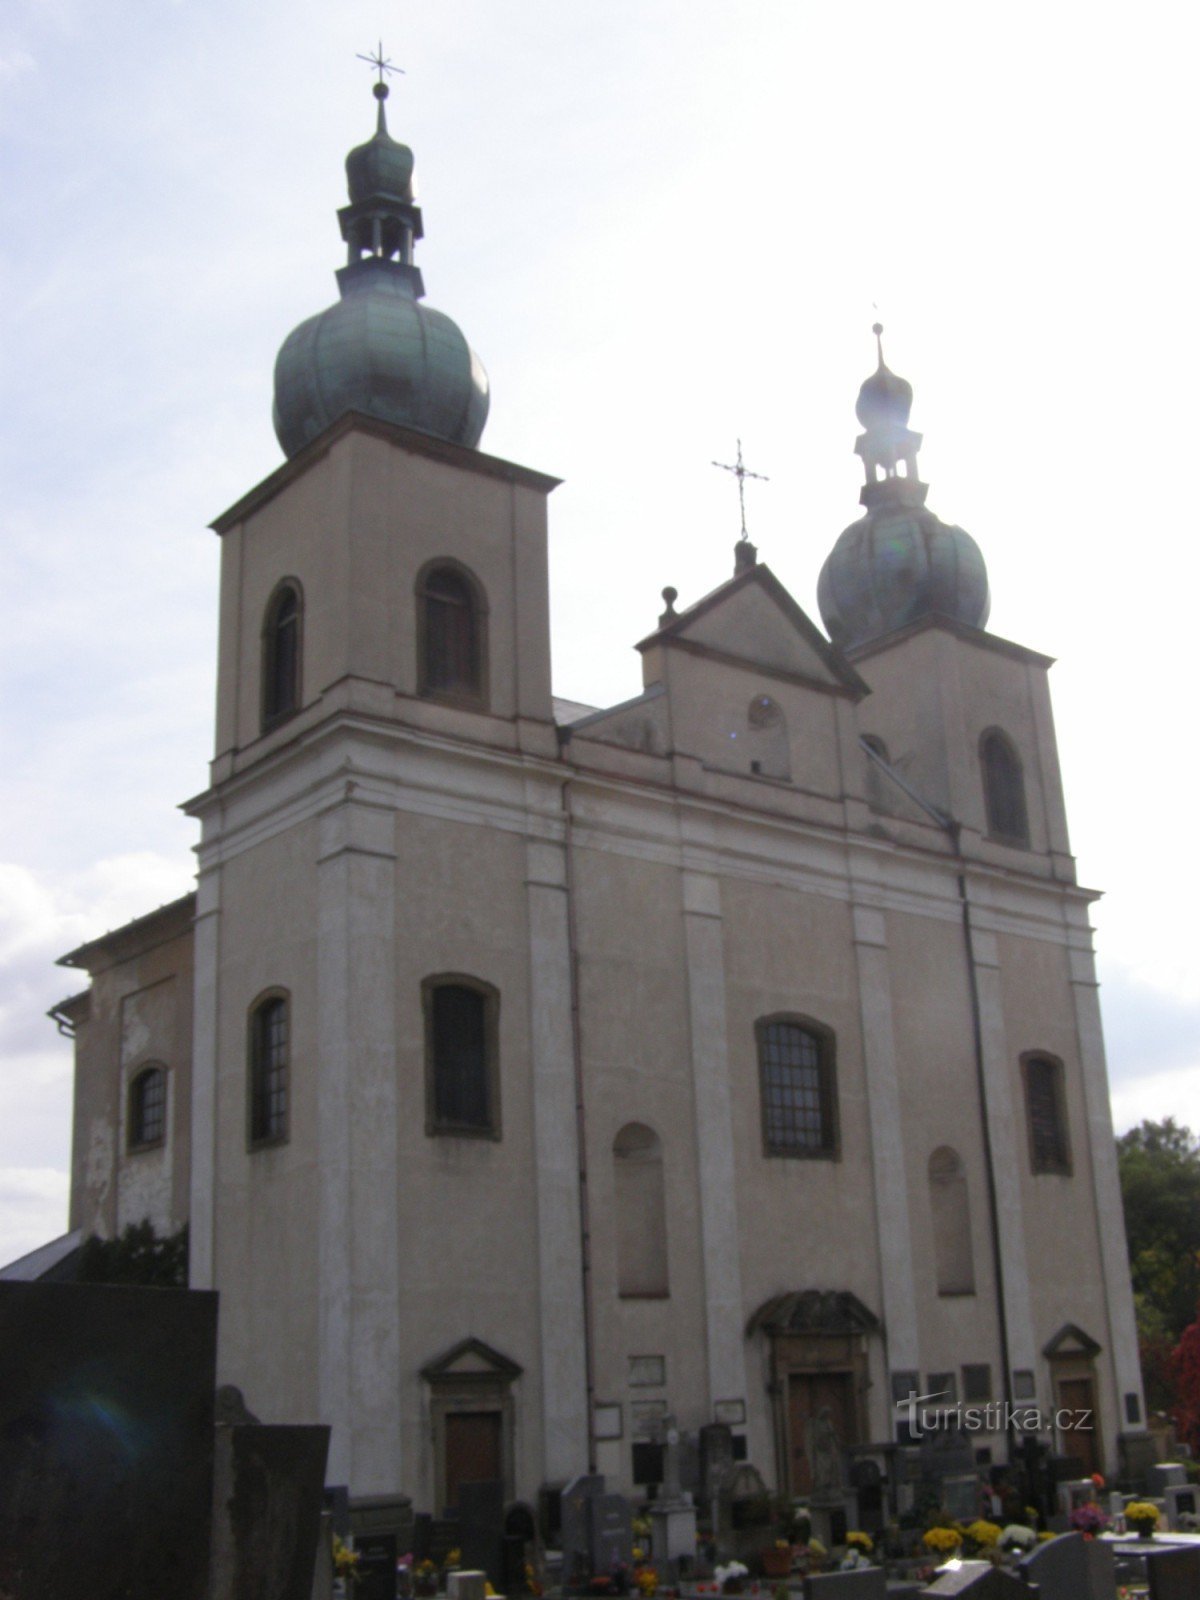 Kostelec nad Orlicí - crkva sv. Anne